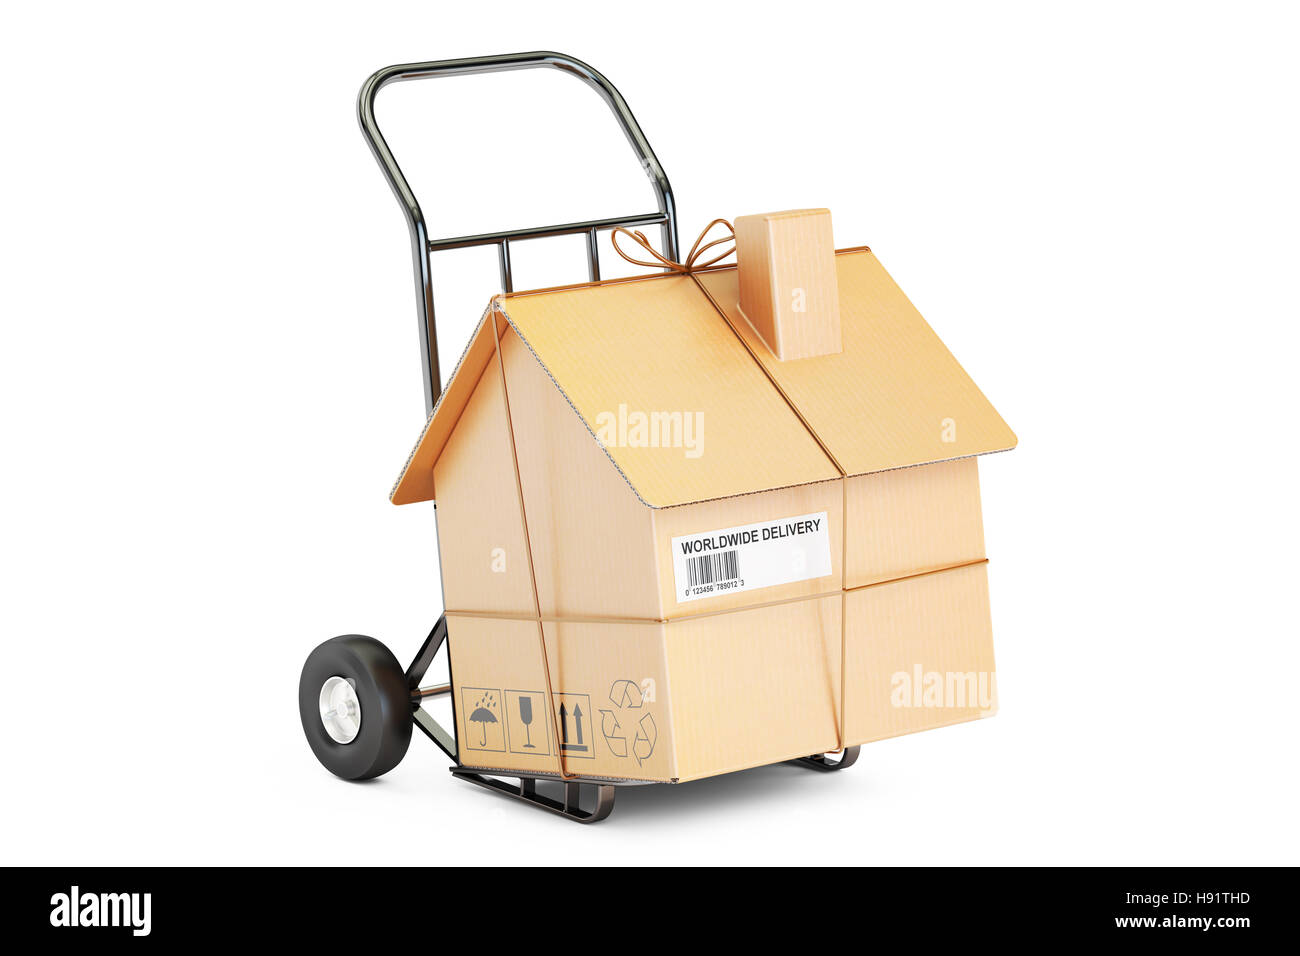 Services à la personne déménagement concept. Camion de main avec maison en carton colis, rendu 3D Banque D'Images